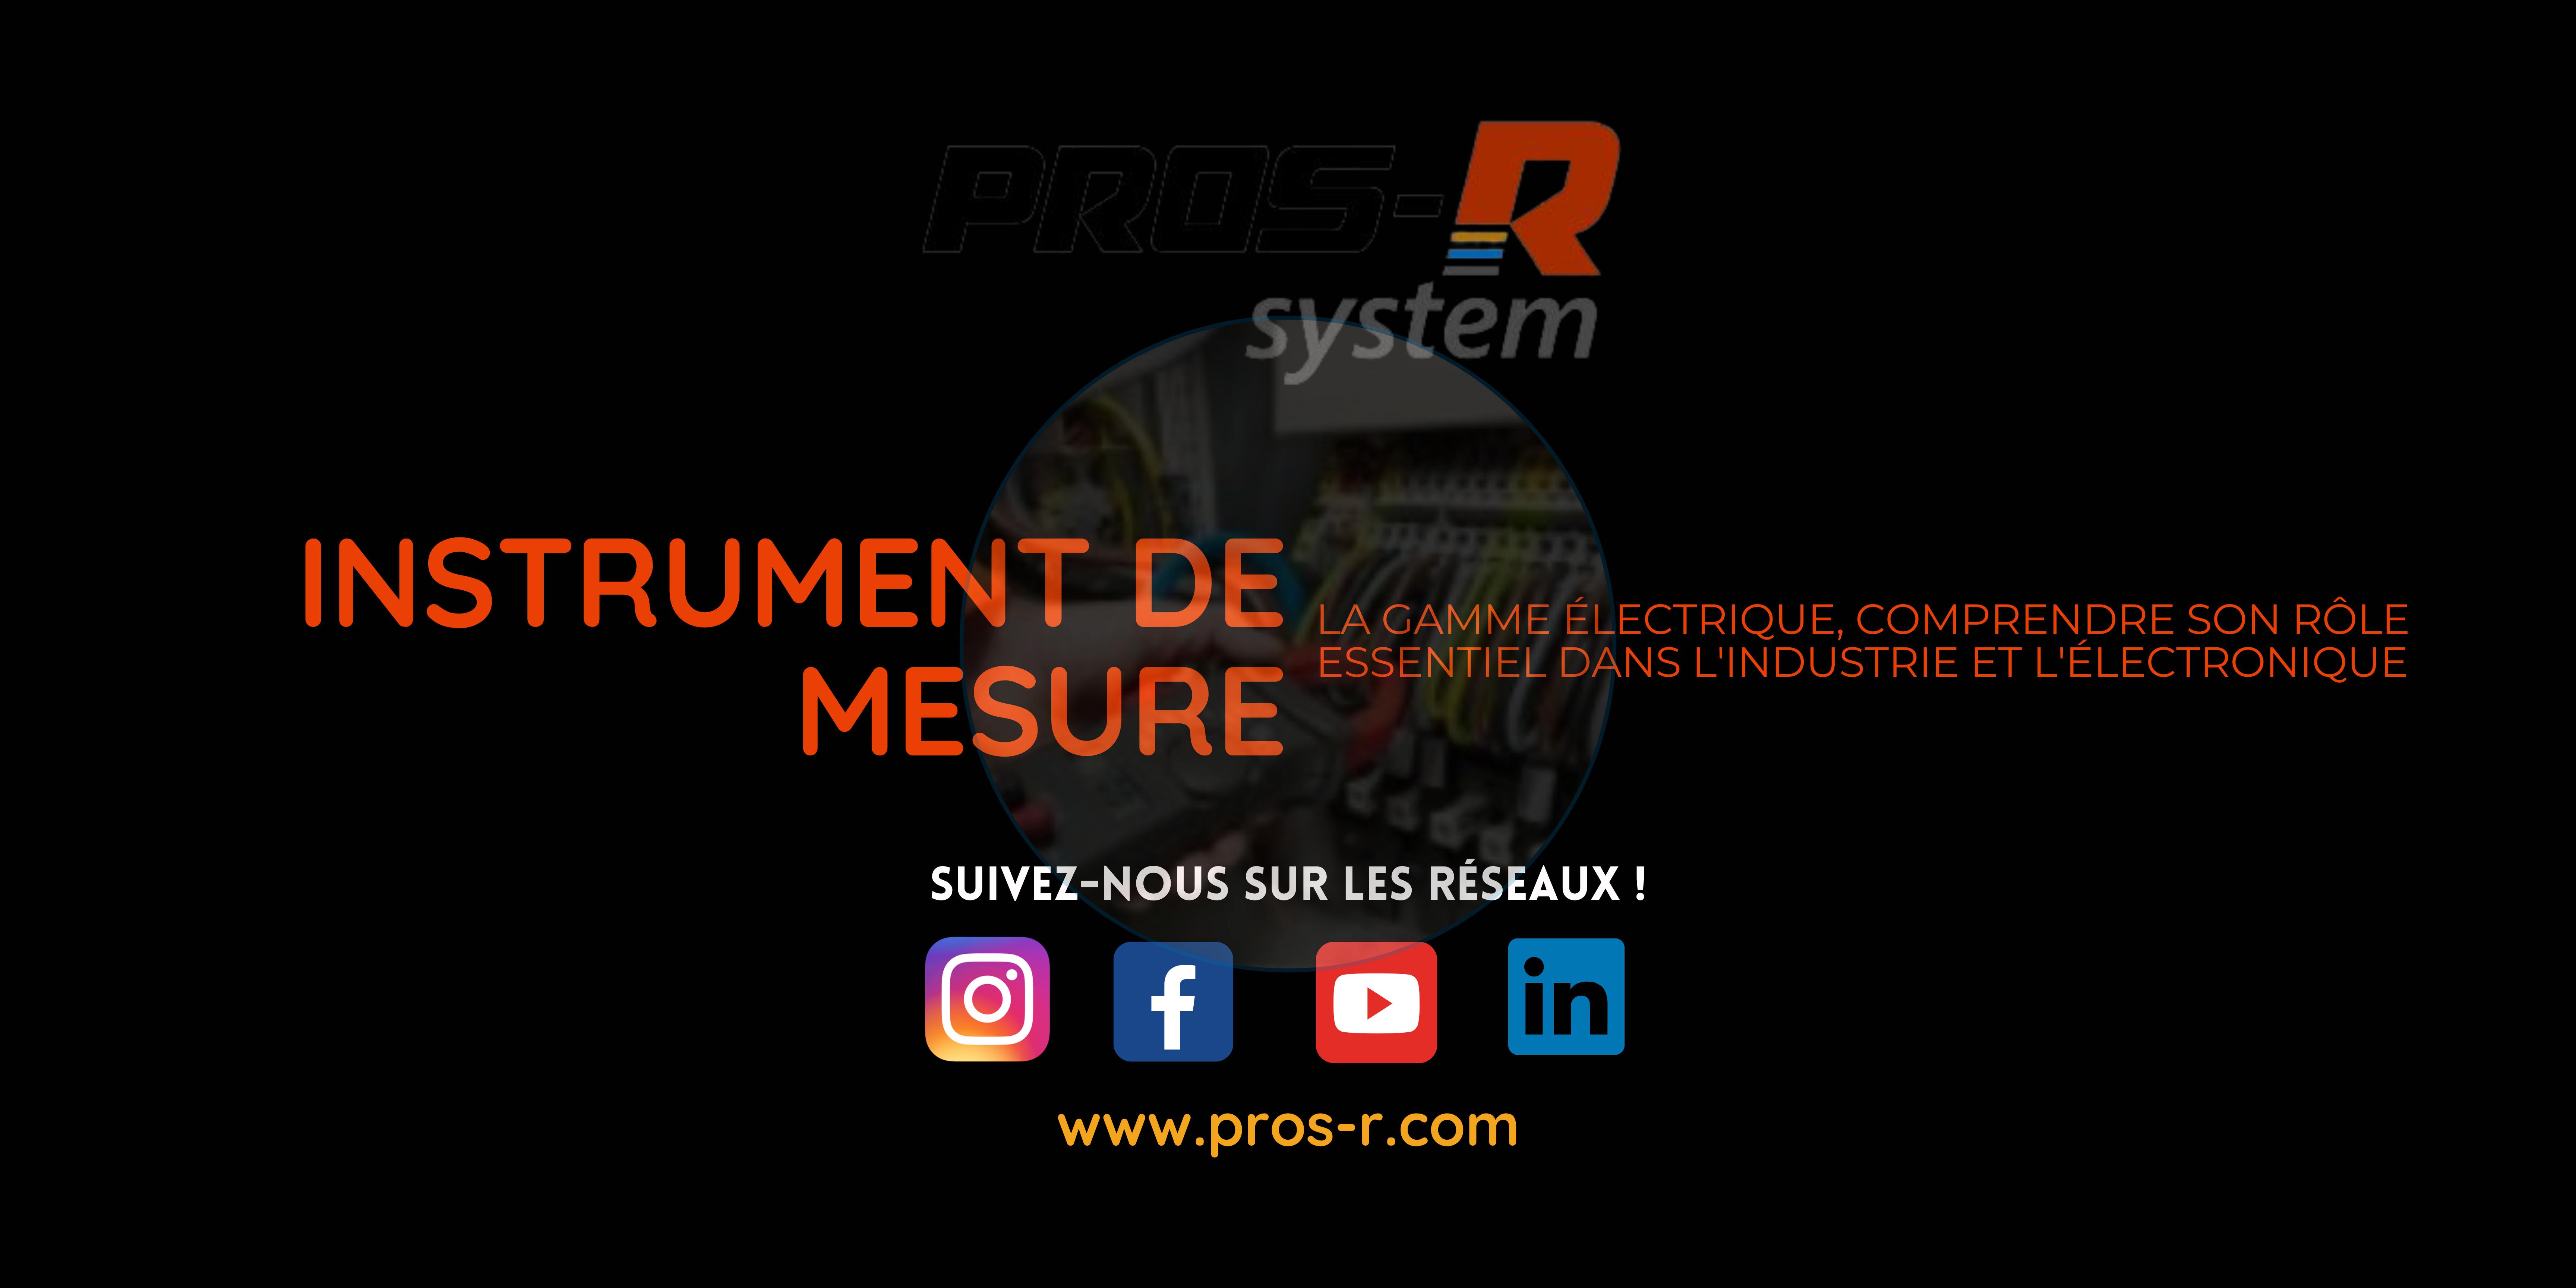 Instruments de mesure électrique : L'essentiel pour l'industrie et l'électronique. PROS-R System